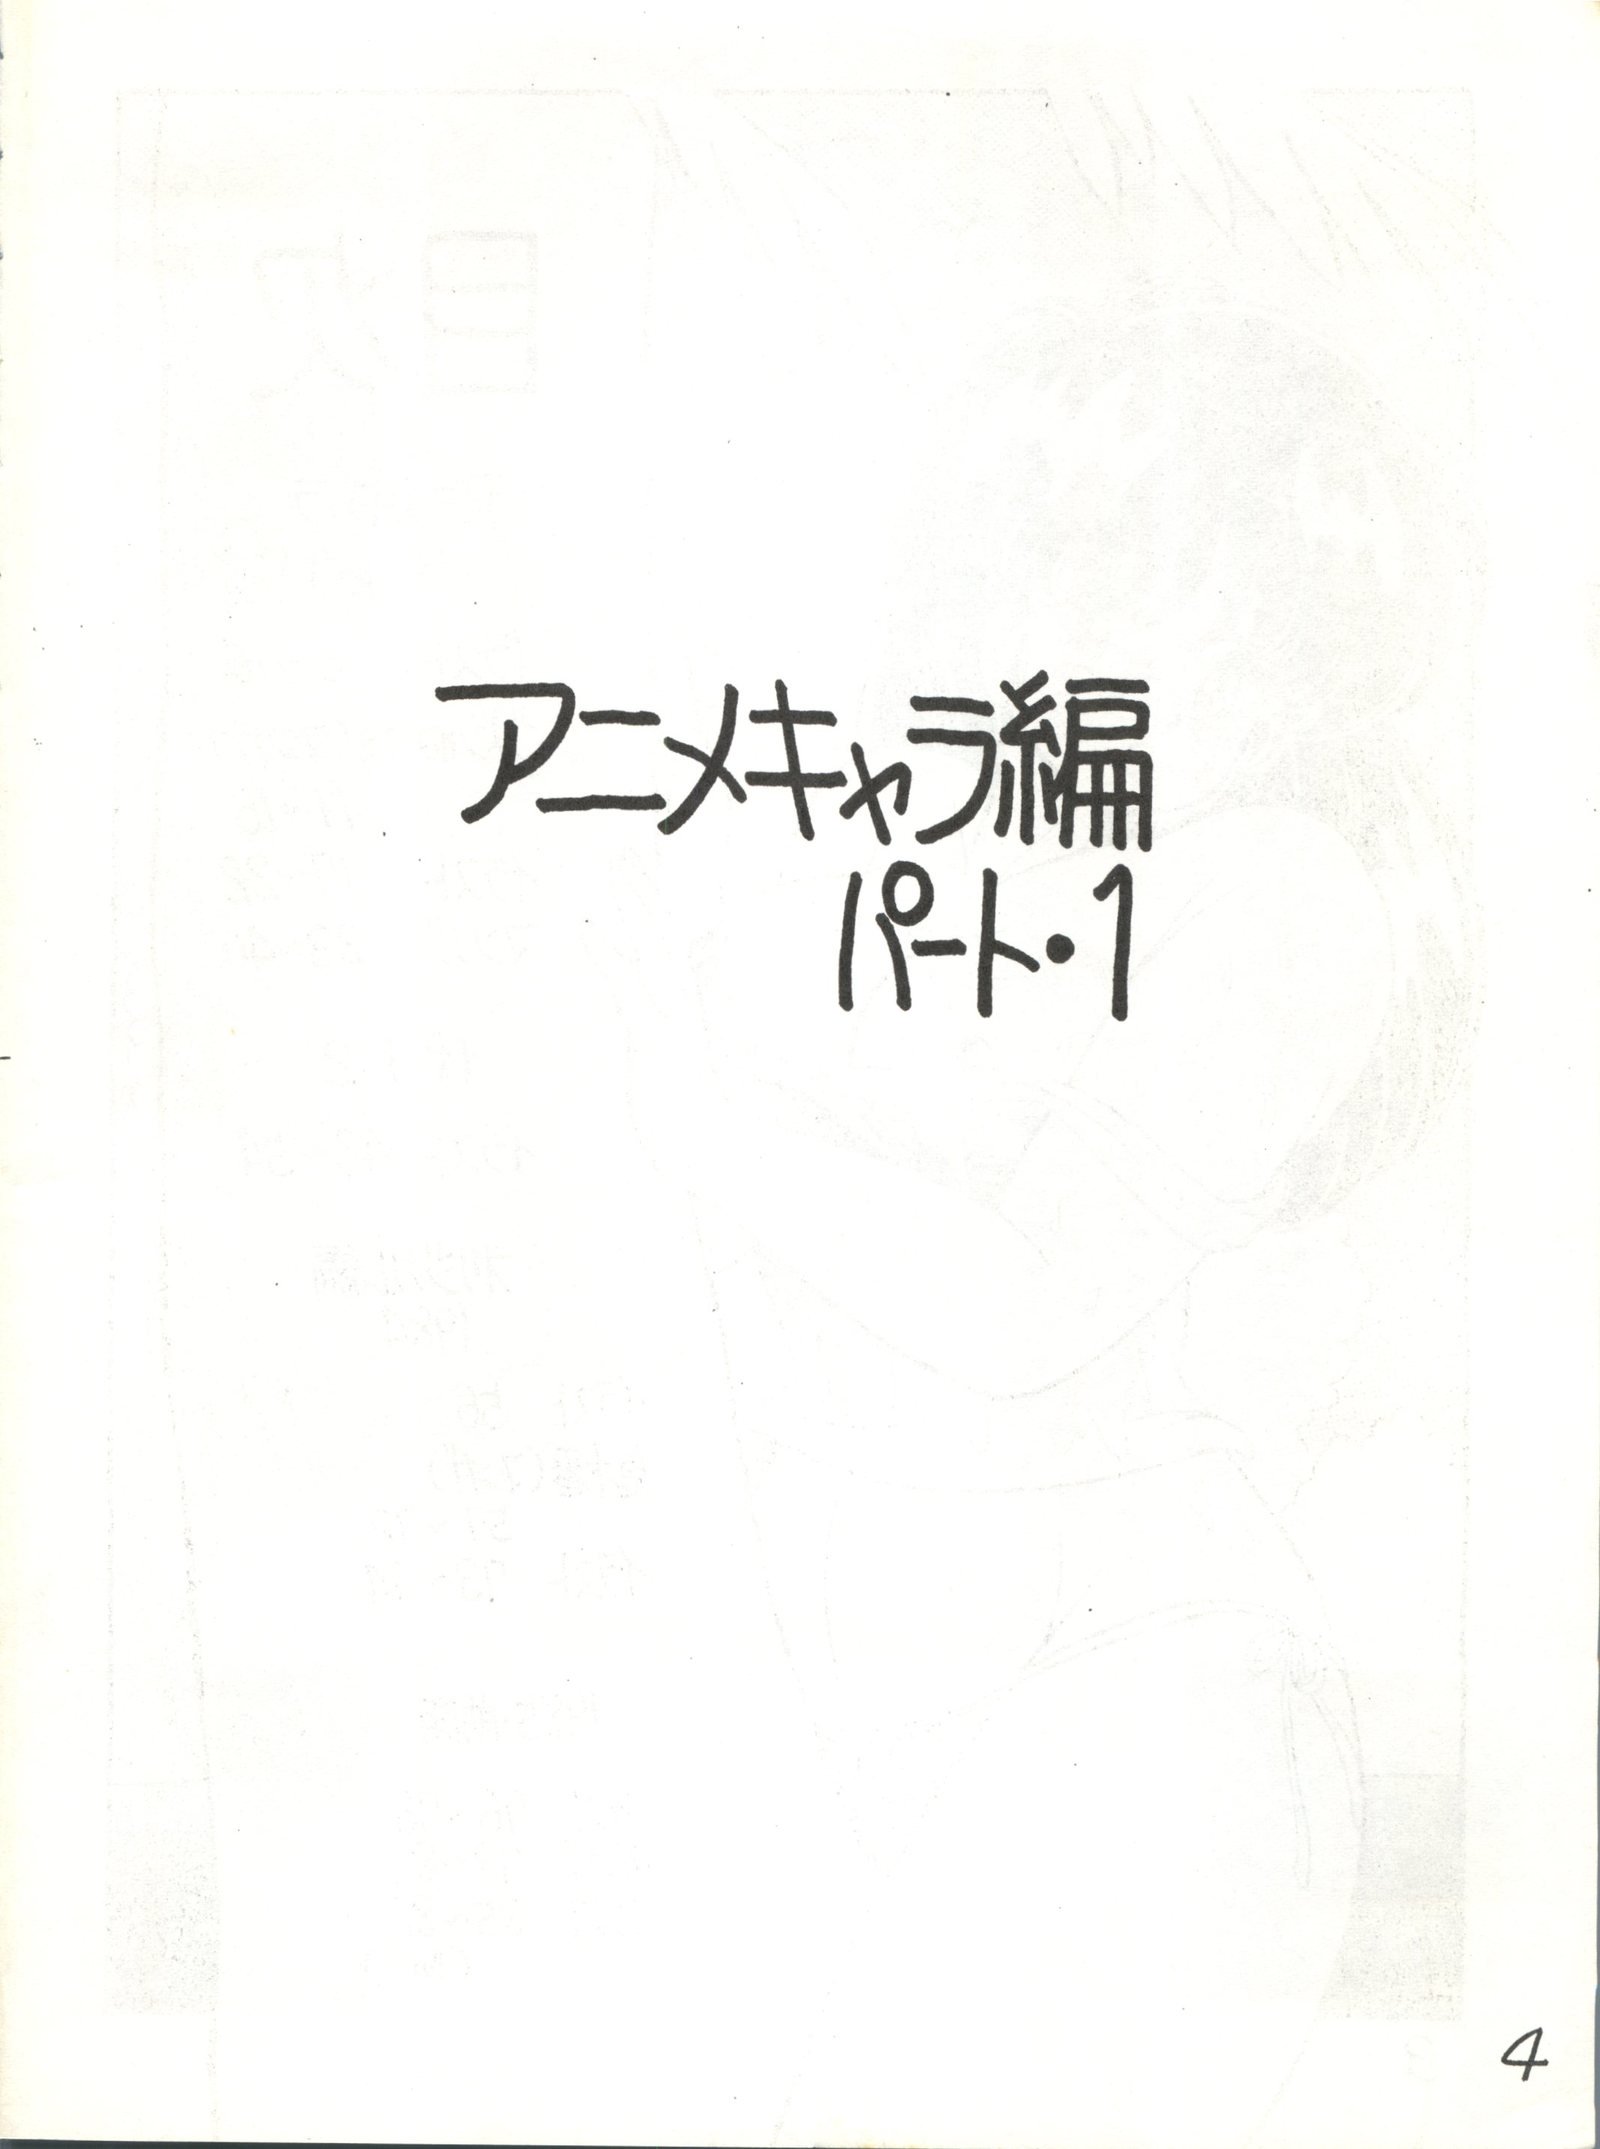 逆天ジュッパツマン-渡辺航太郎作本集Vol。 1-